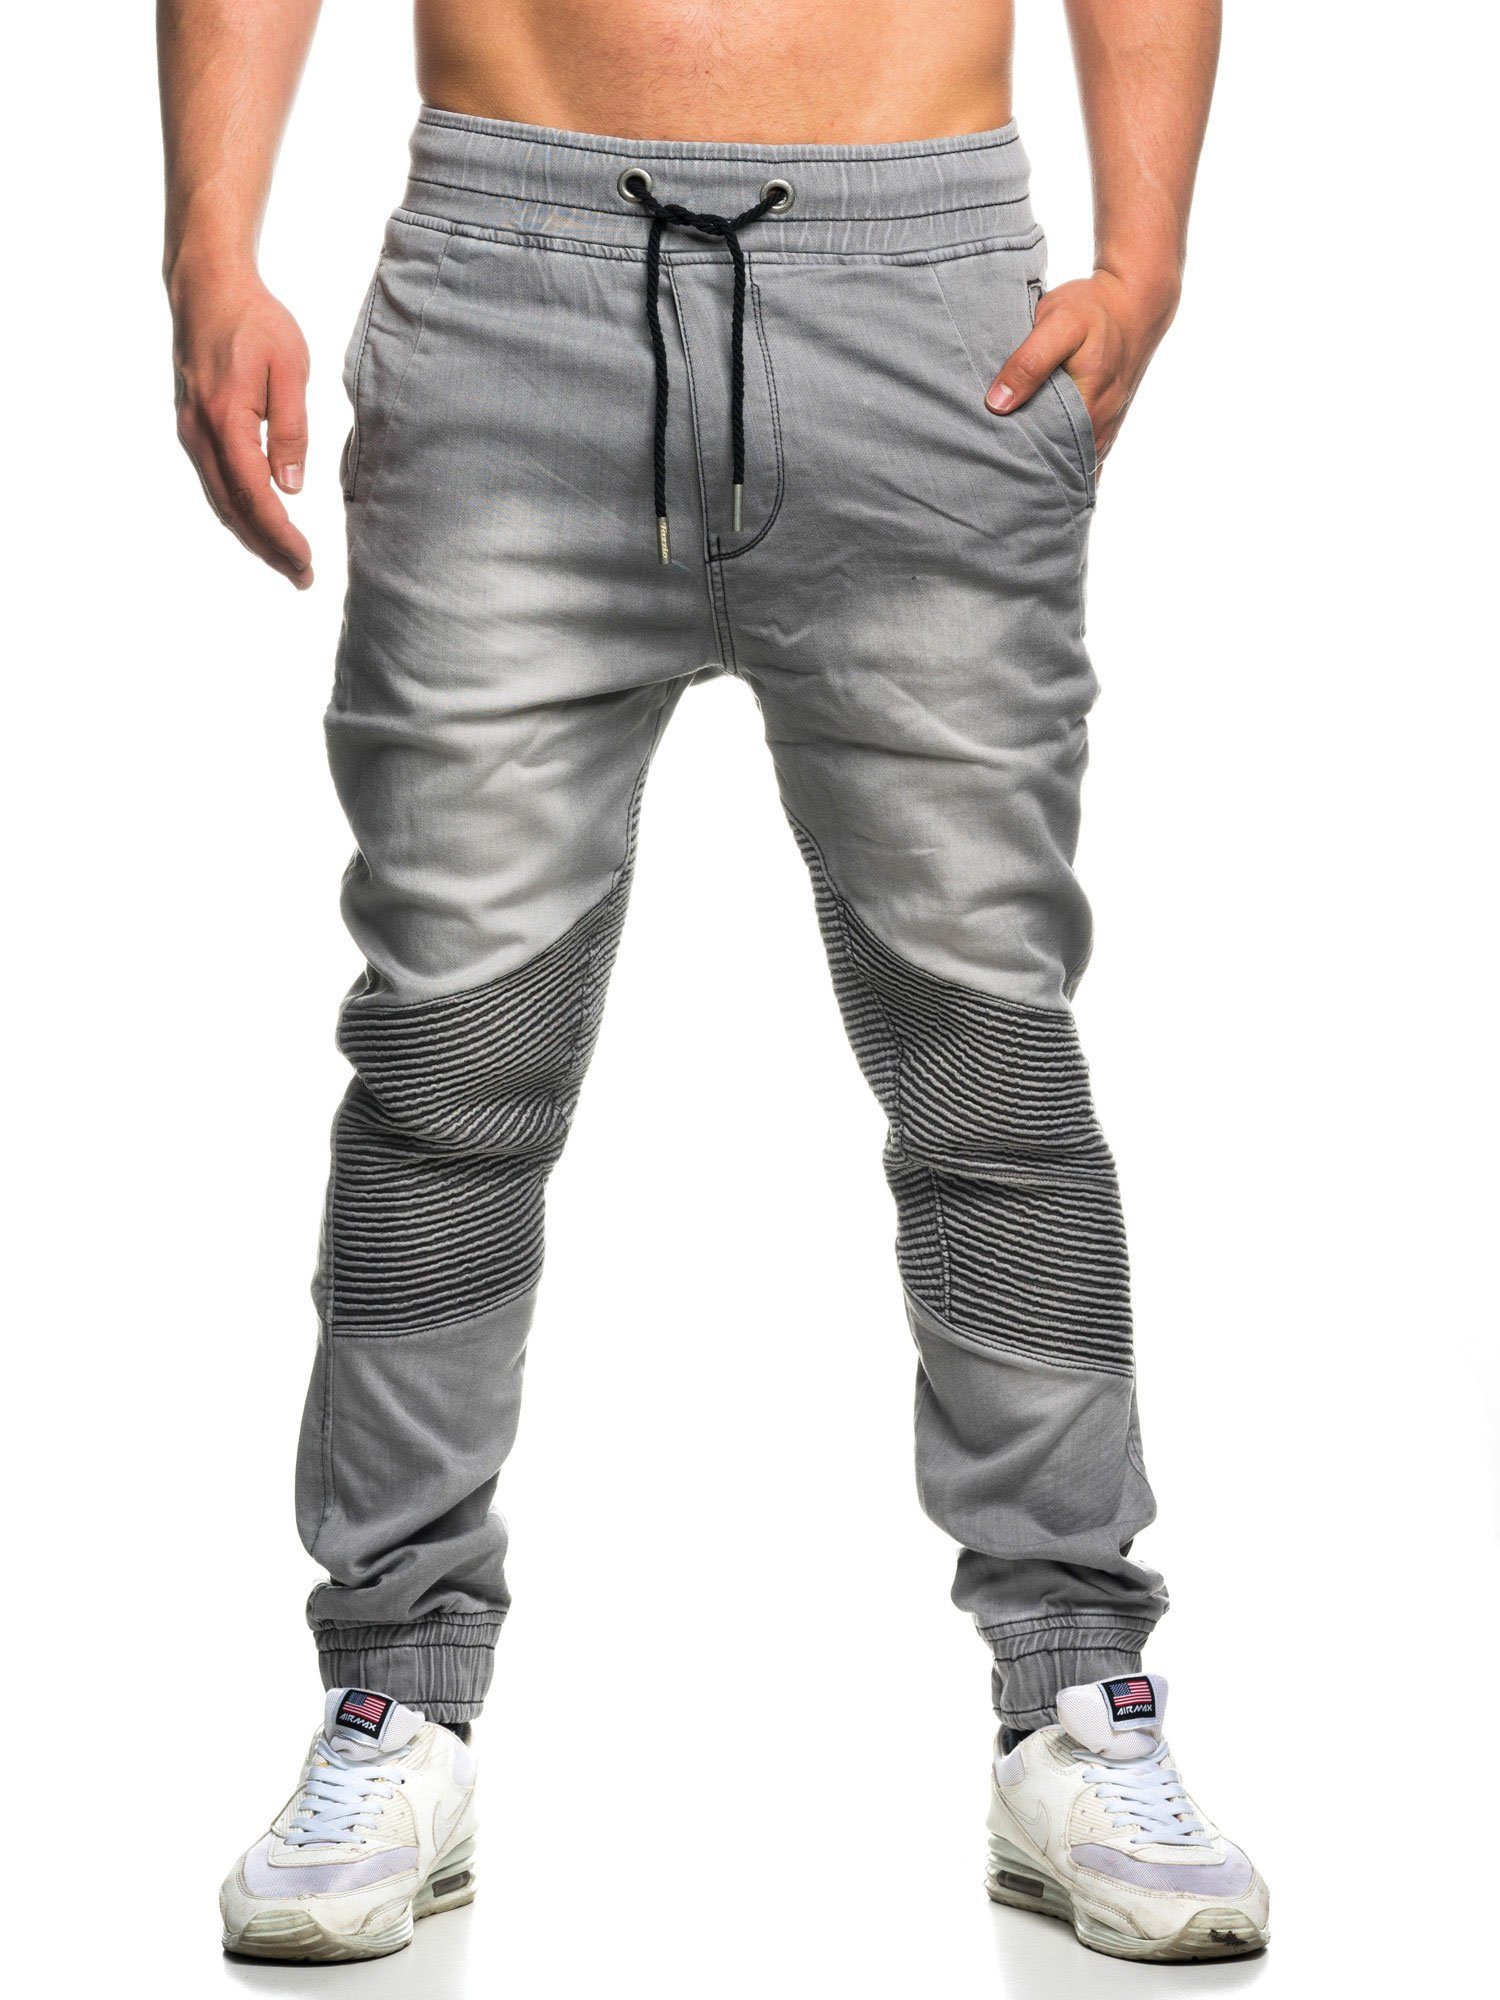 16505 & Sweat Tazzio grau im Biker-Look Jogger-Stil Hose Straight-Jeans